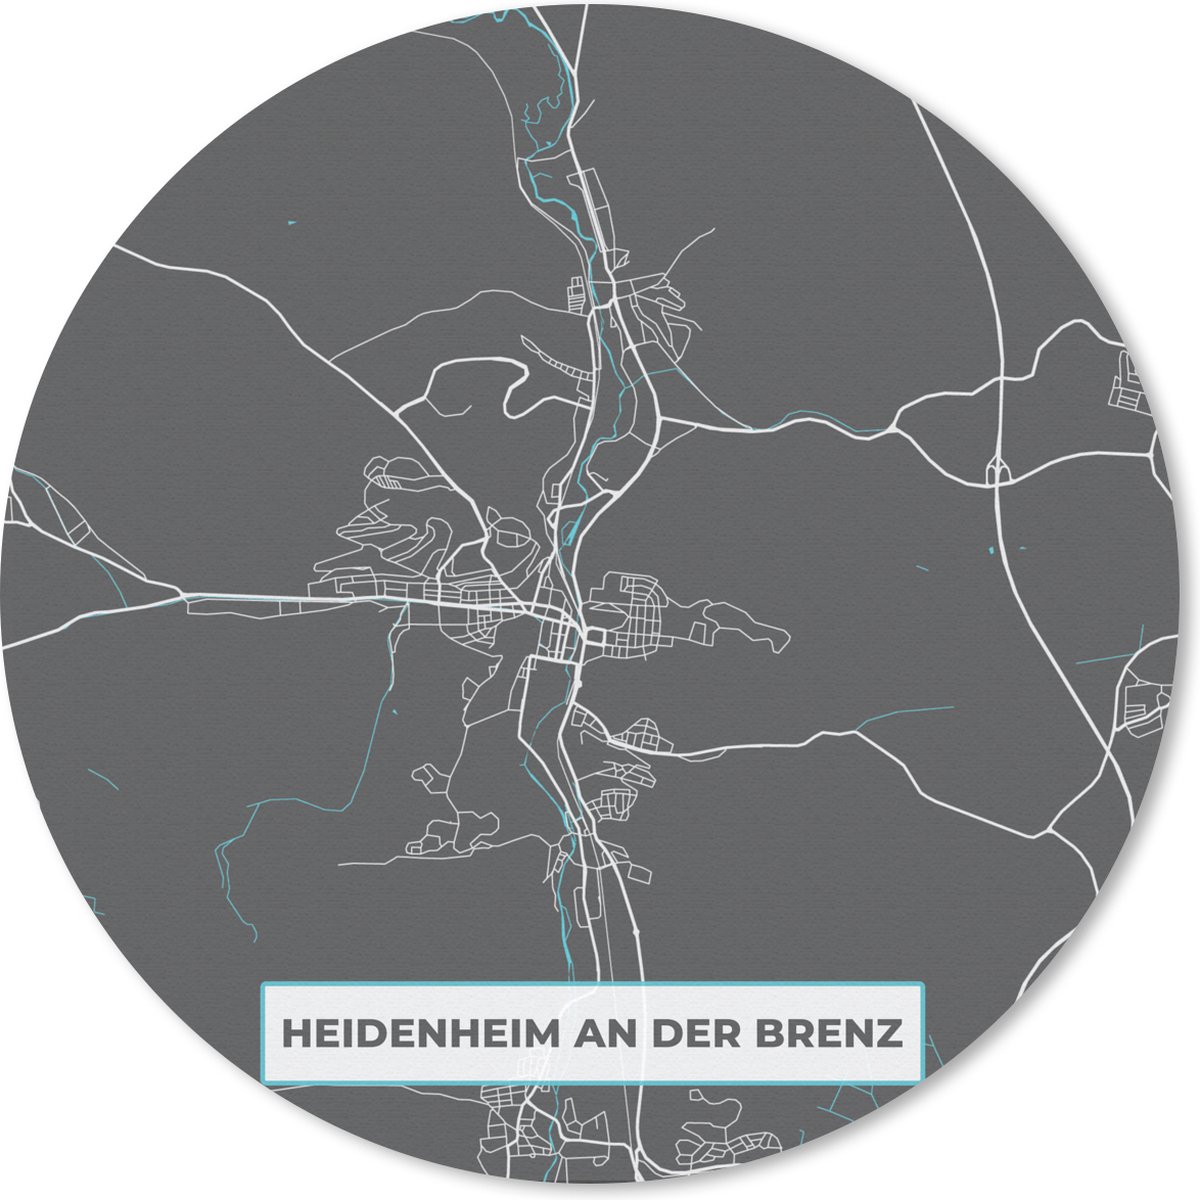 Muismat - Mousepad - Rond - Kaart – Plattegrond – Stadskaart – Heidenheim an der Brenz – Duitsland – Blauw - 40x40 cm - Ronde muismat